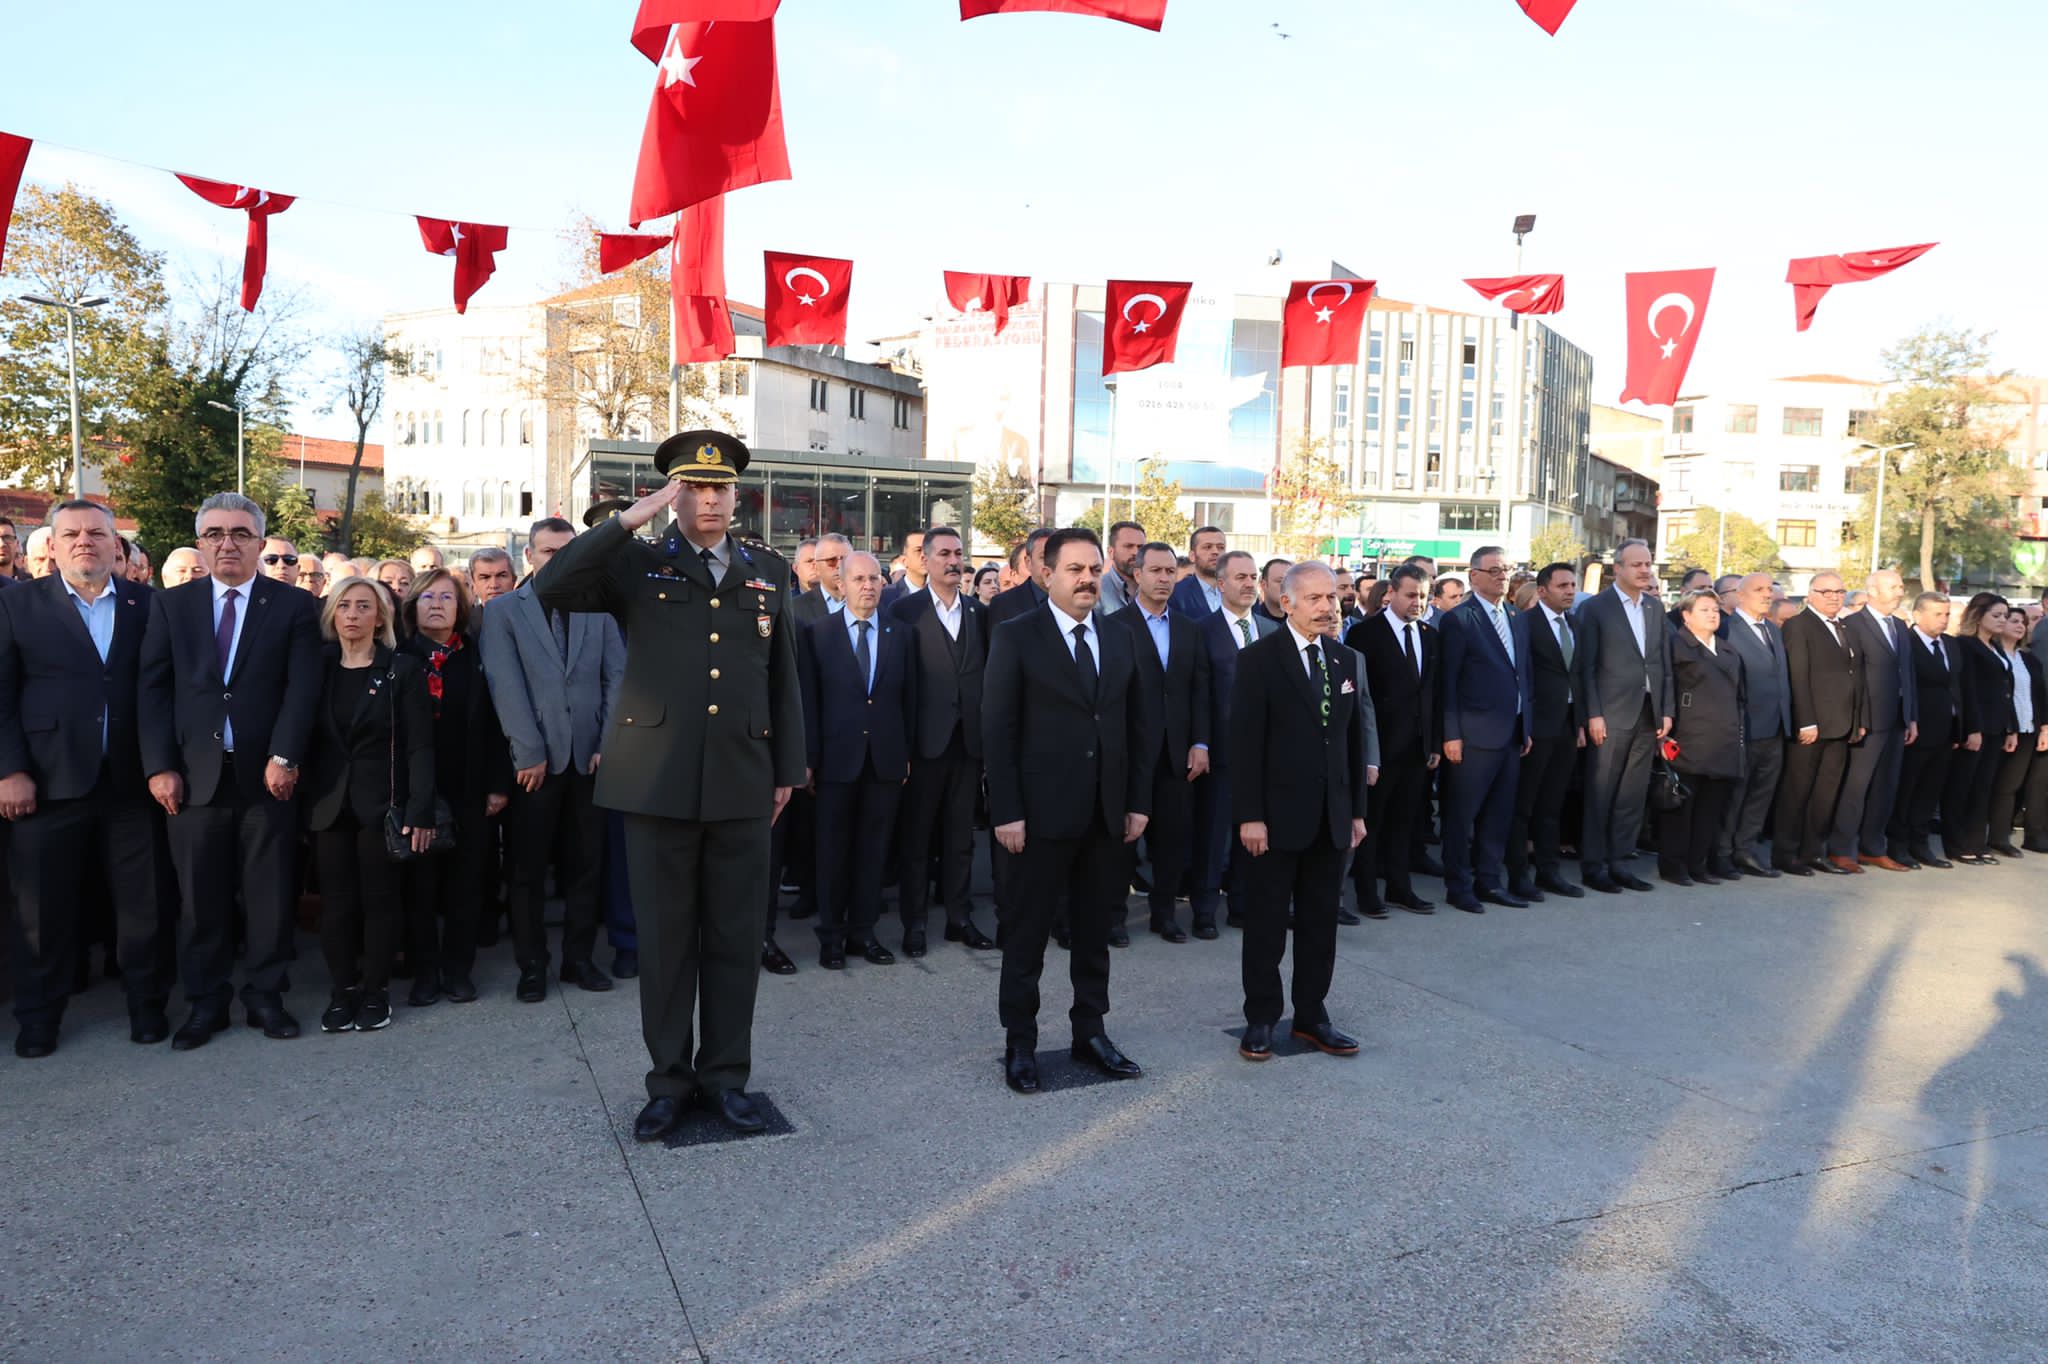 Atatürk,Bayrampaşa’da düzenlenen törenle anıldı.